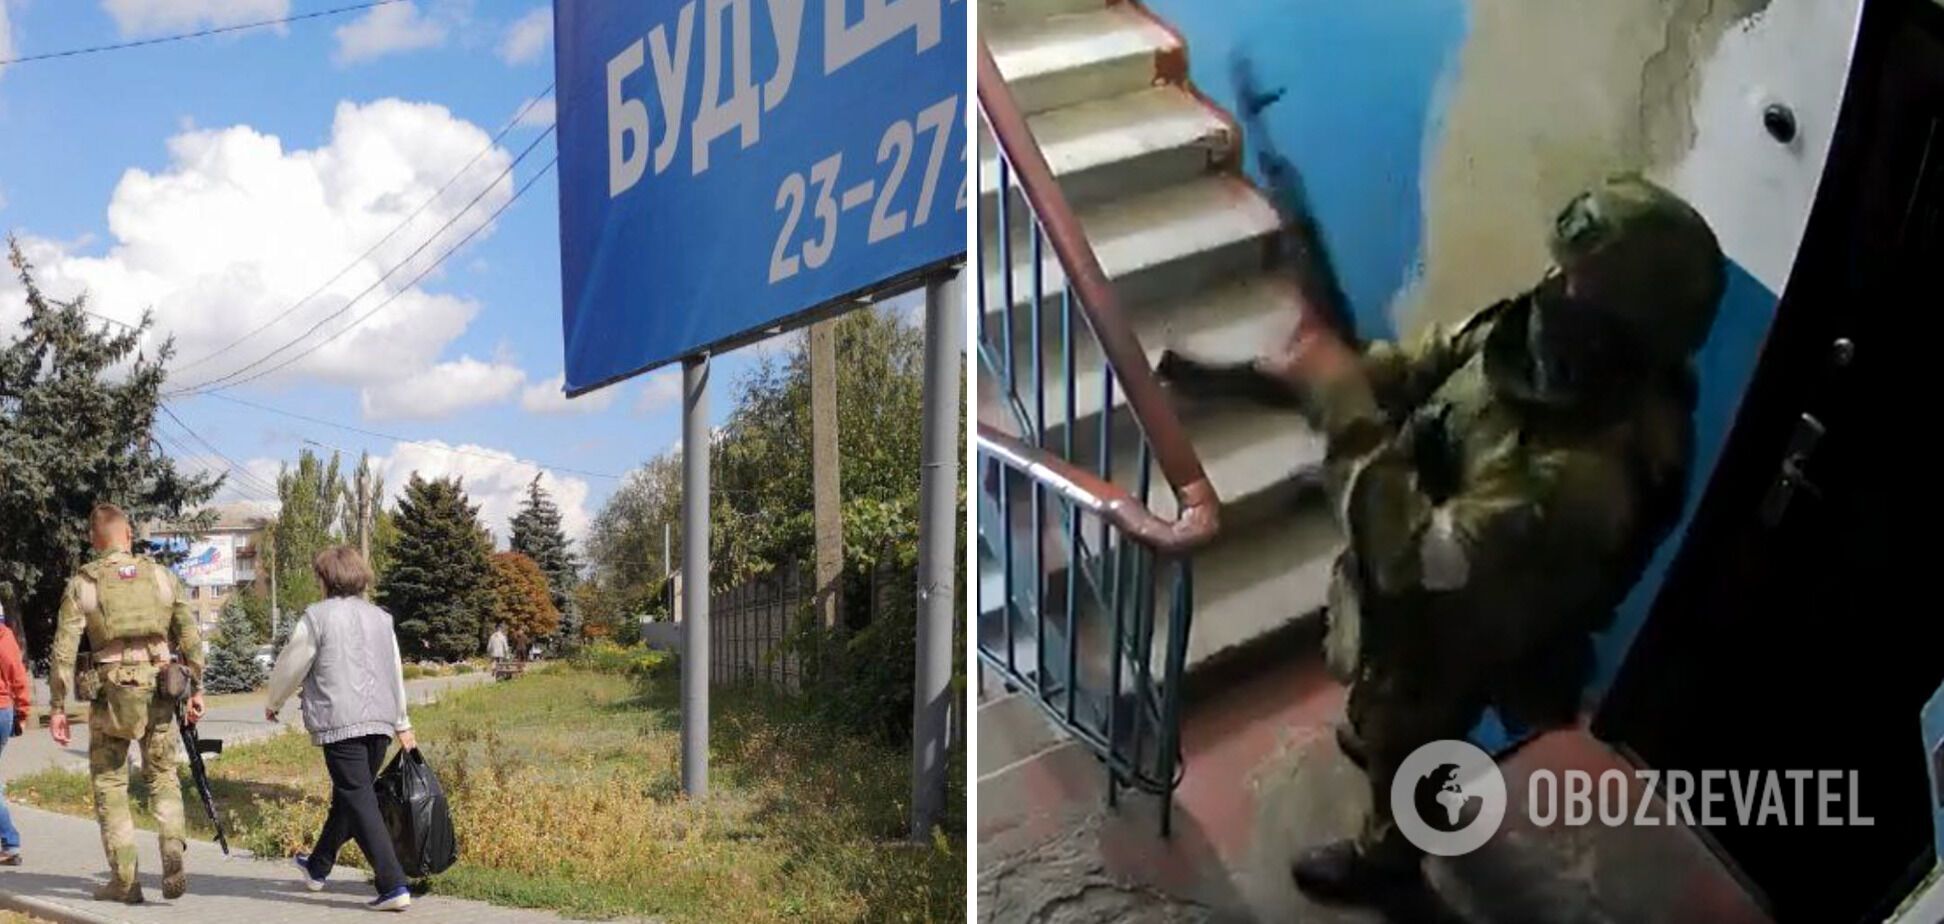 'Референдум' под дулами автоматов: на Запорожье и Херсонщине оккупанты под страхом расправы заставляют украинцев голосовать. Видео